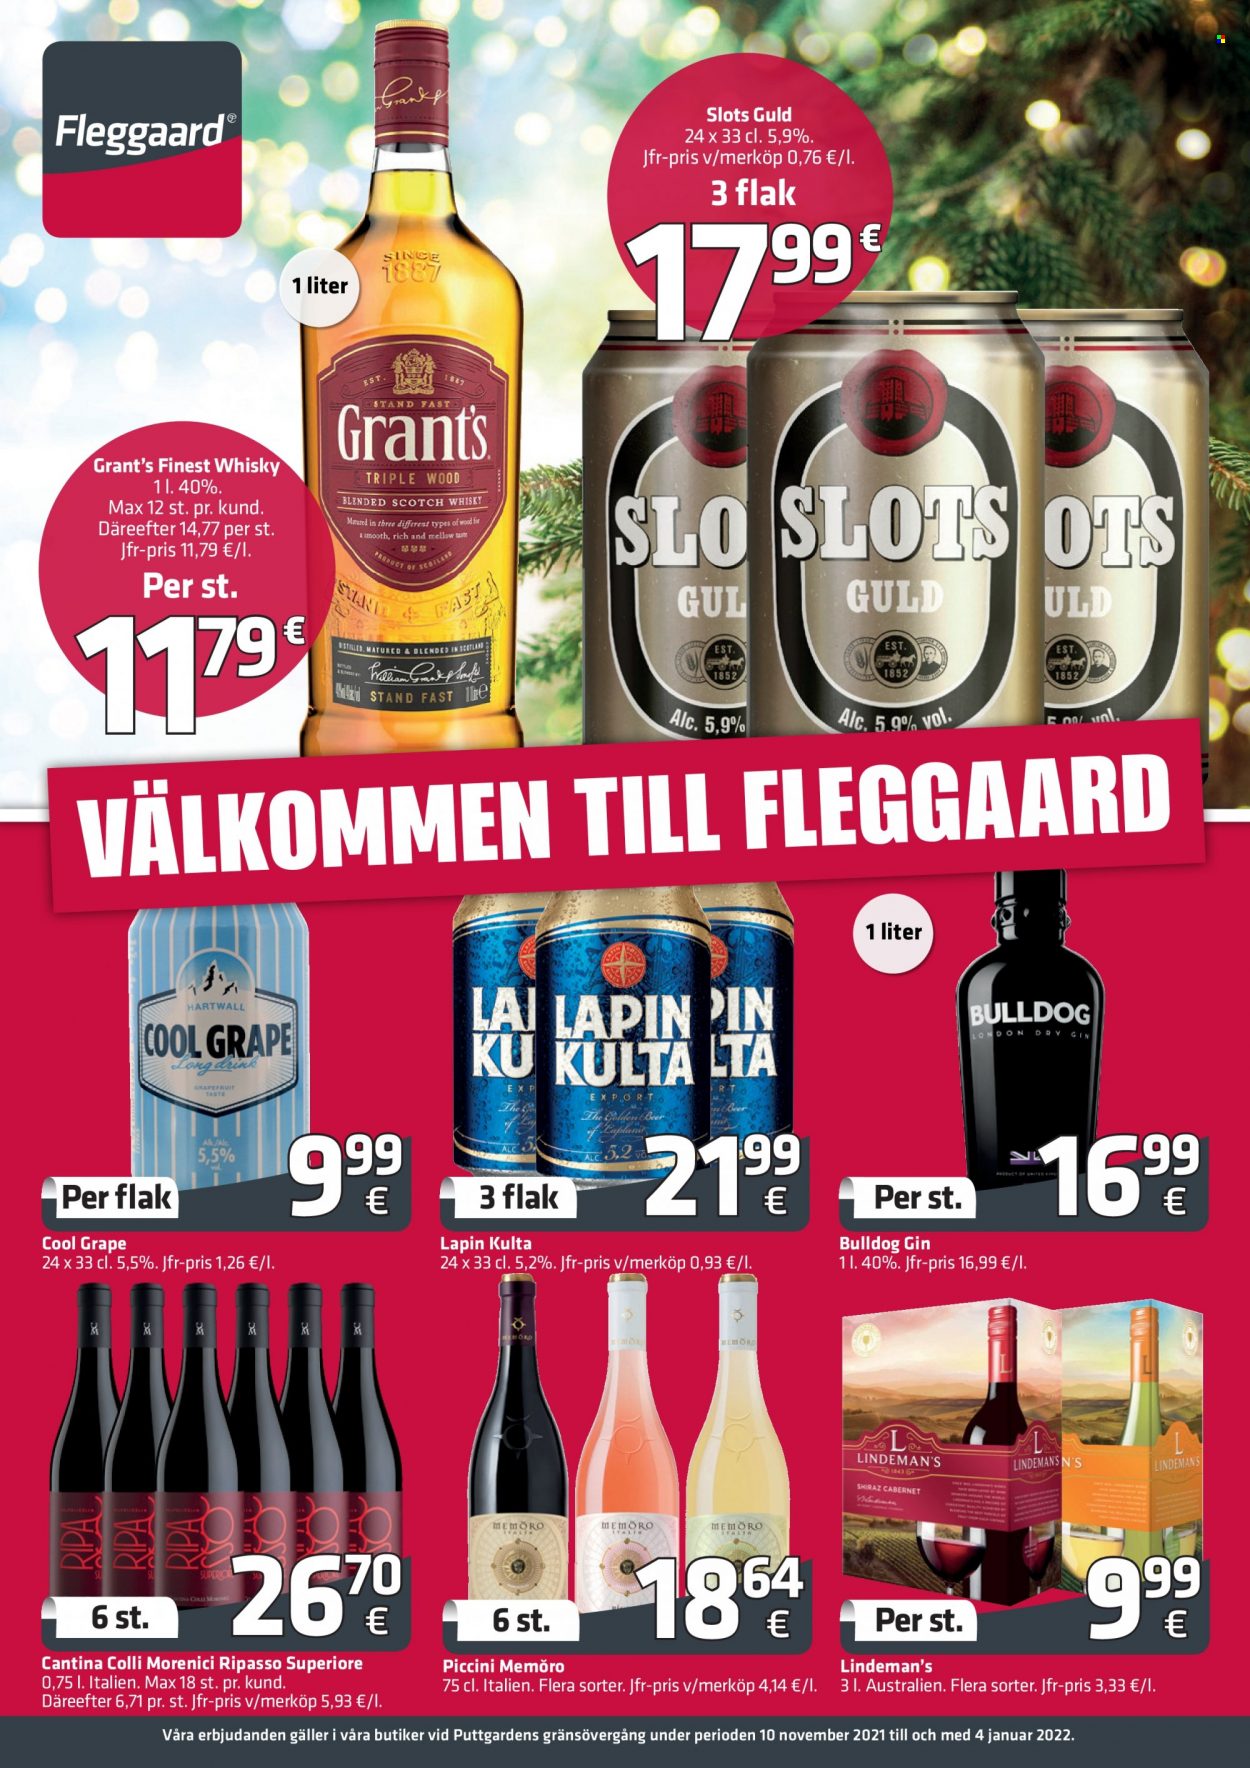 thumbnail - Fleggaard tilbud  - 10.11.2021 - 4.1.2022 - tilbudsprodukter - vin, Bulldog, gin, Grant‘s, whisky. Side 1.